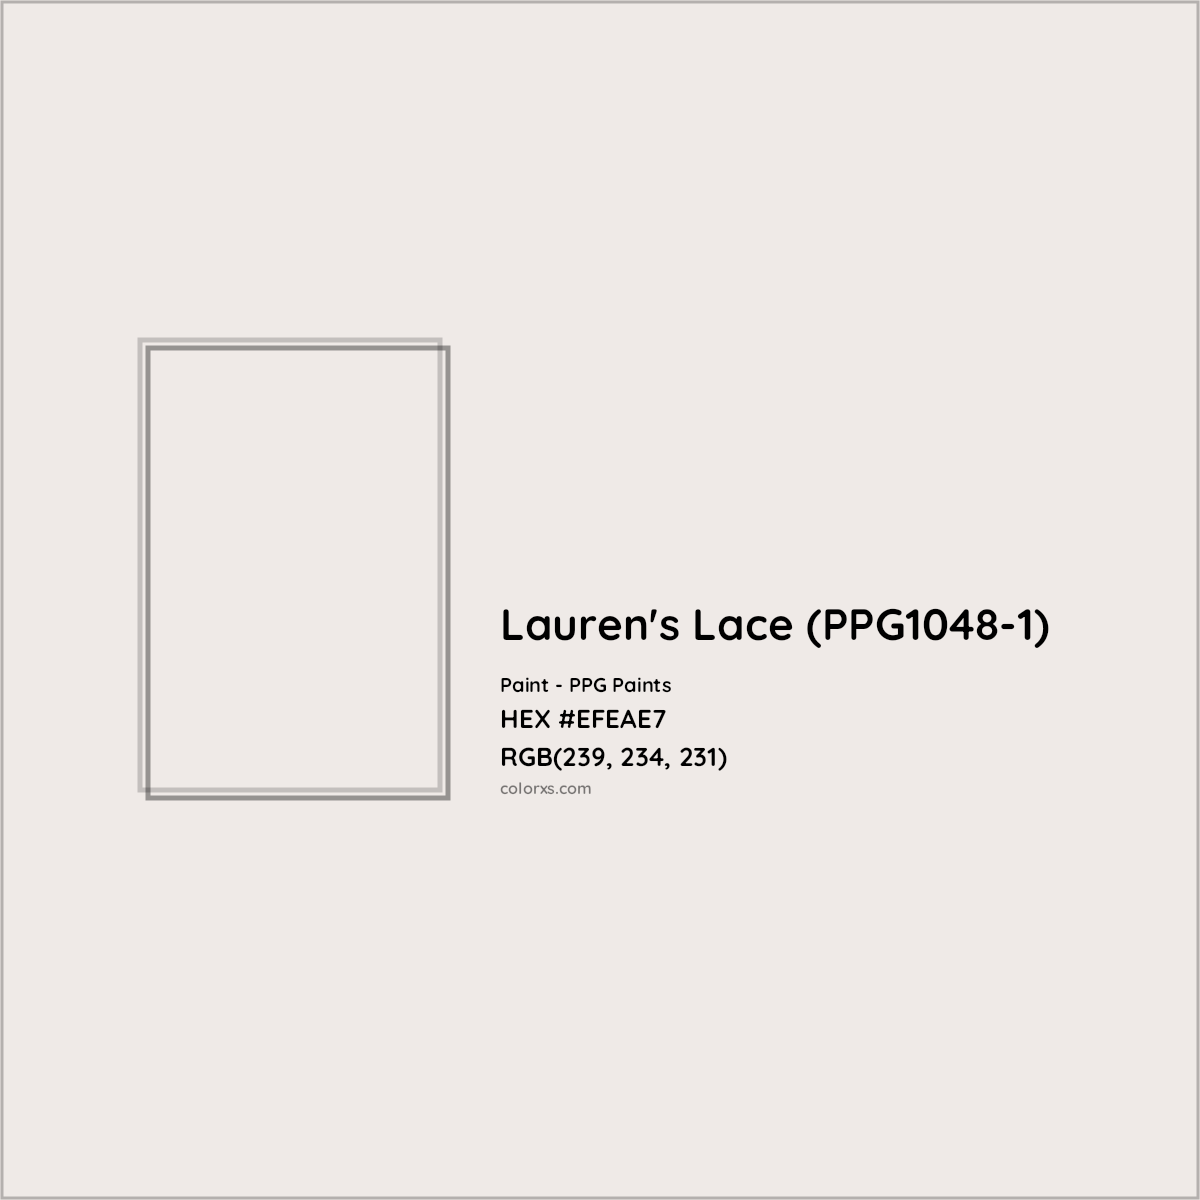 HEX #EFEAE7 Lauren's Lace (PPG1048-1) Paint PPG Paints - Color Code